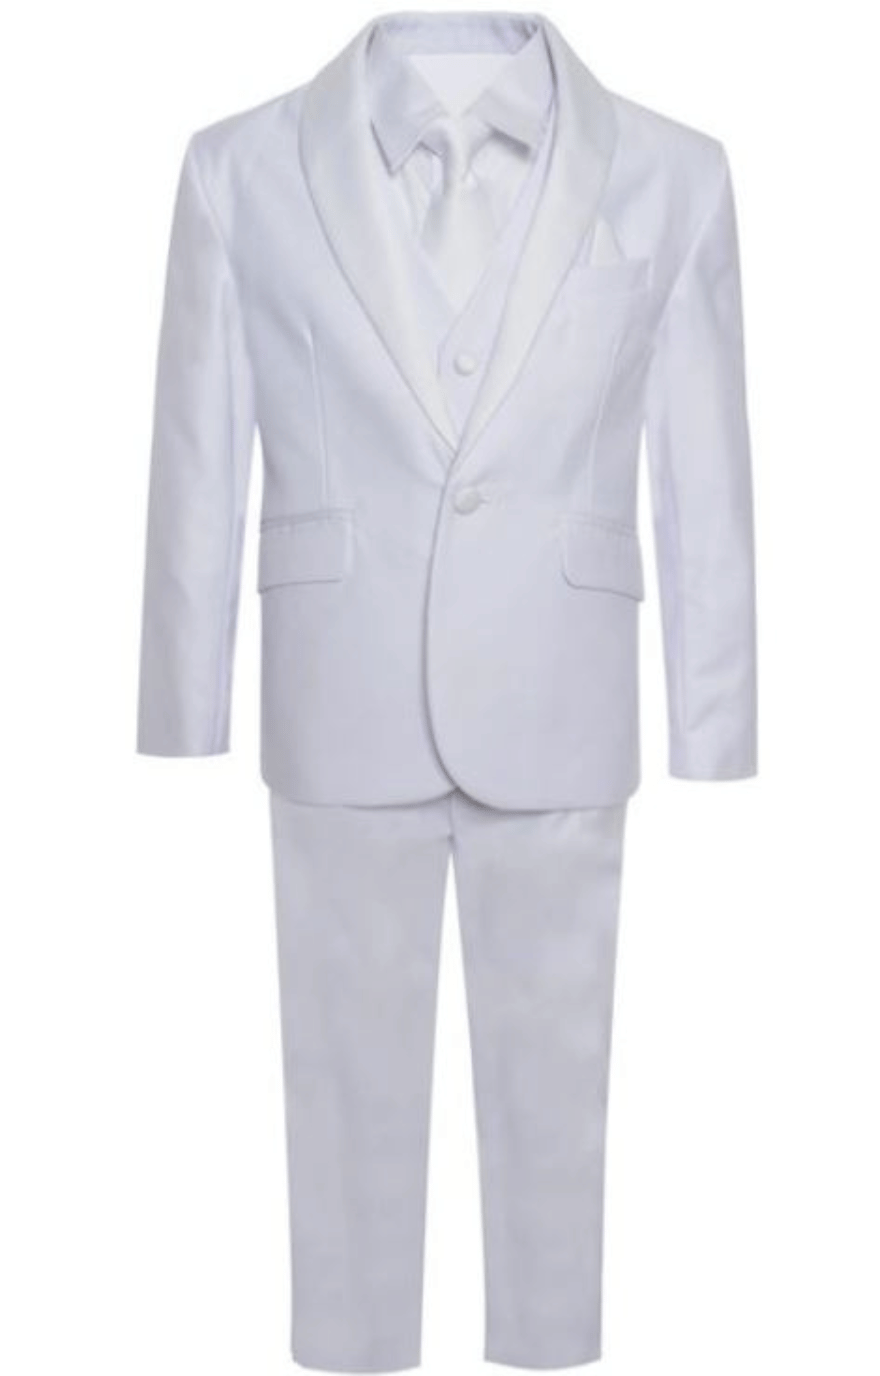 George 5 Piece Tuxedo: WHITE